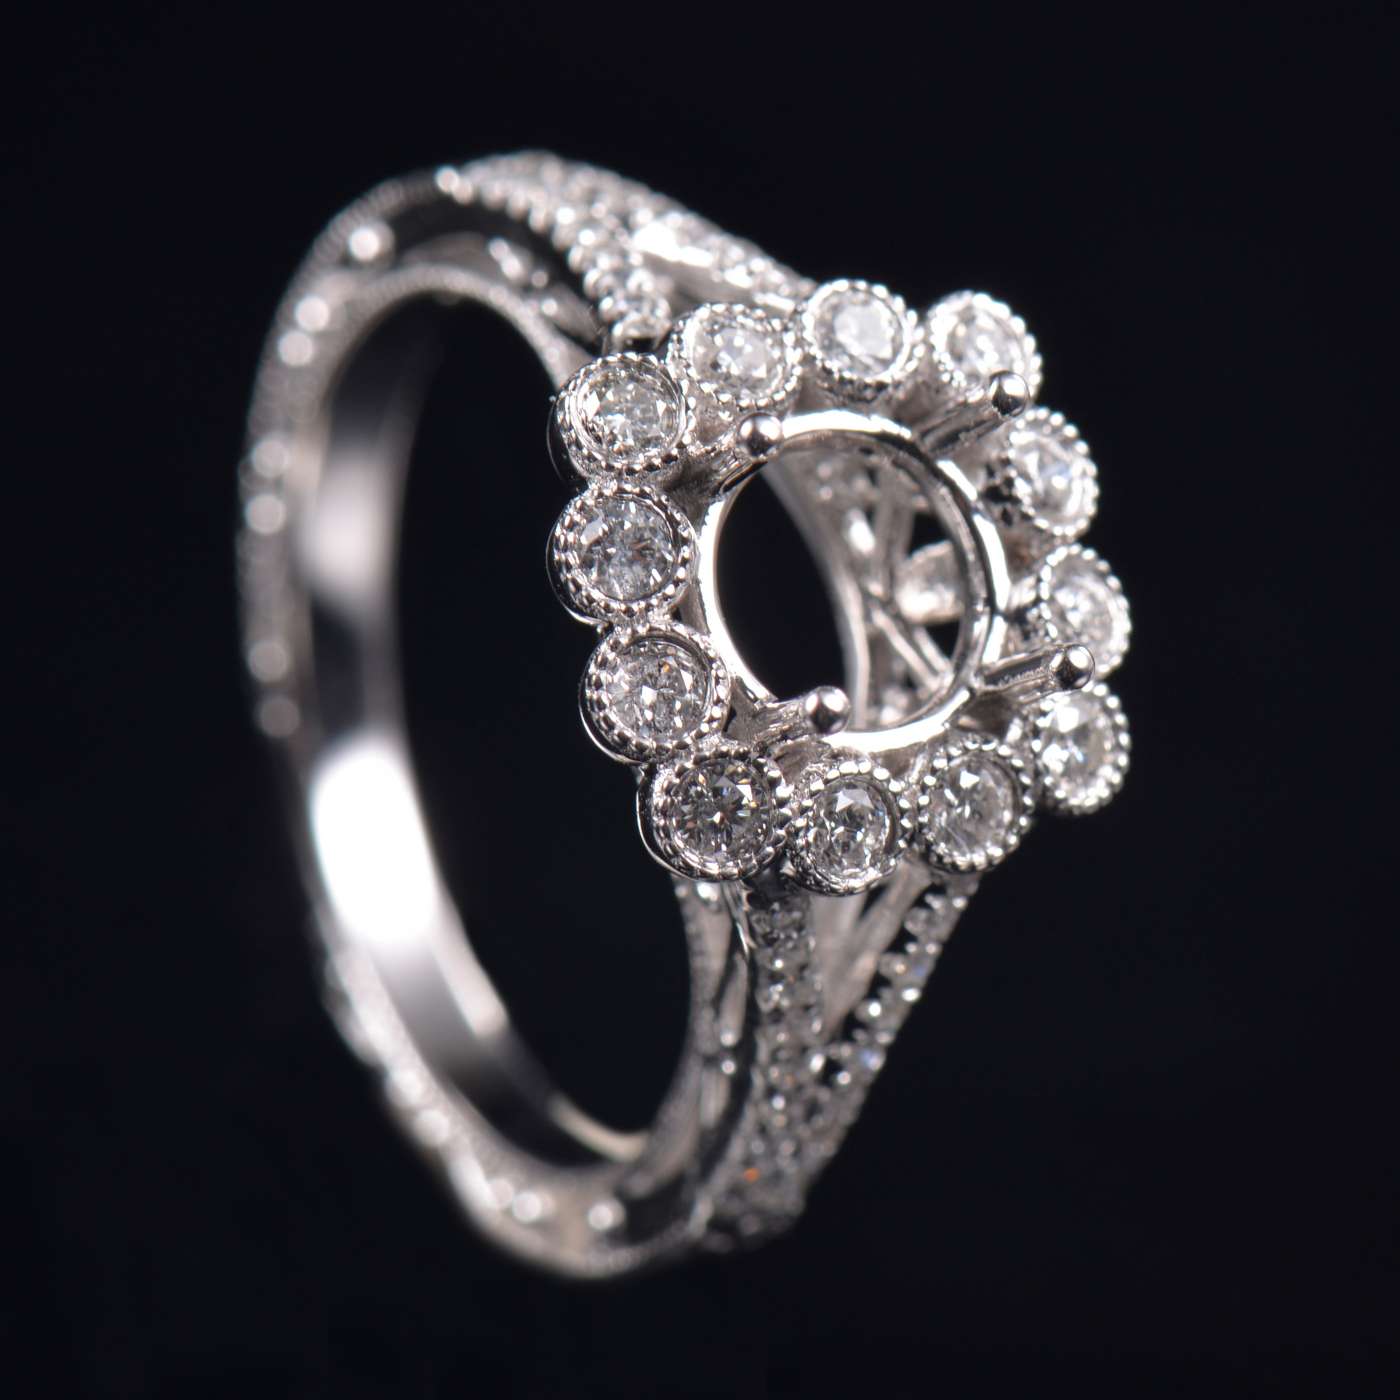 Vintage Engagement Ring Mounting - 3 